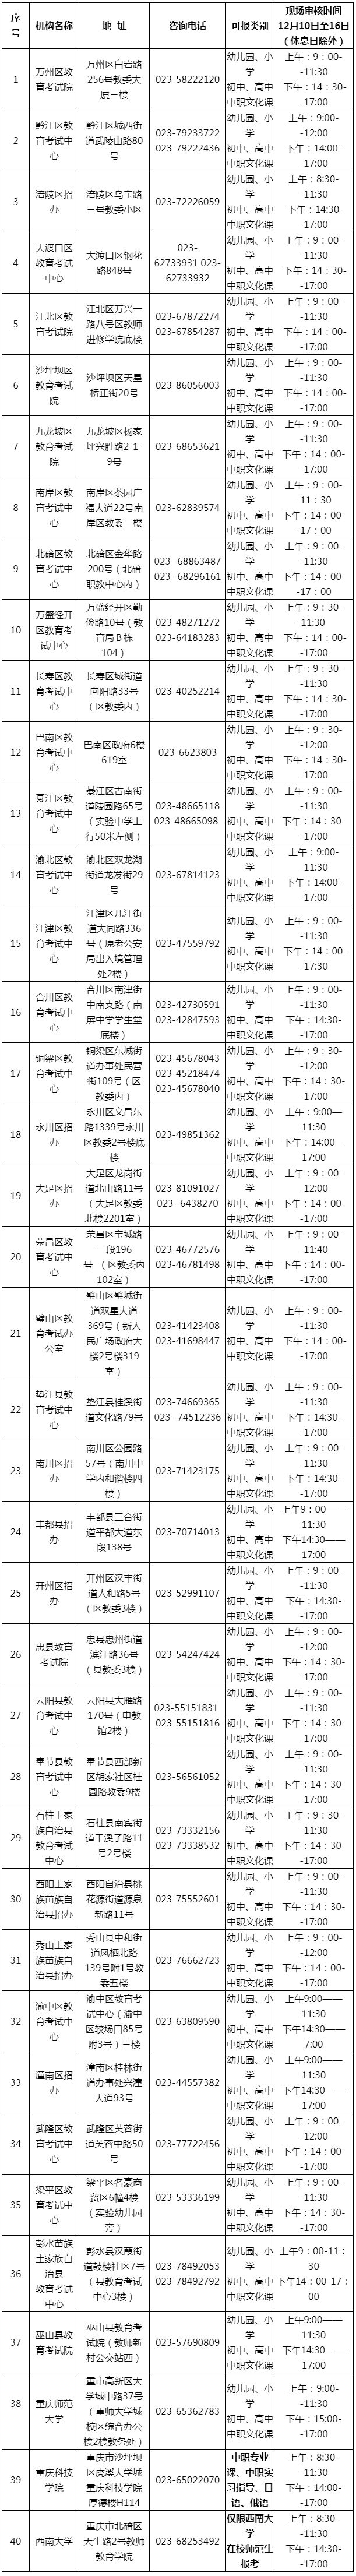 2020年下半年重庆市中小学教师资格考试面试报名考区及现场确认点